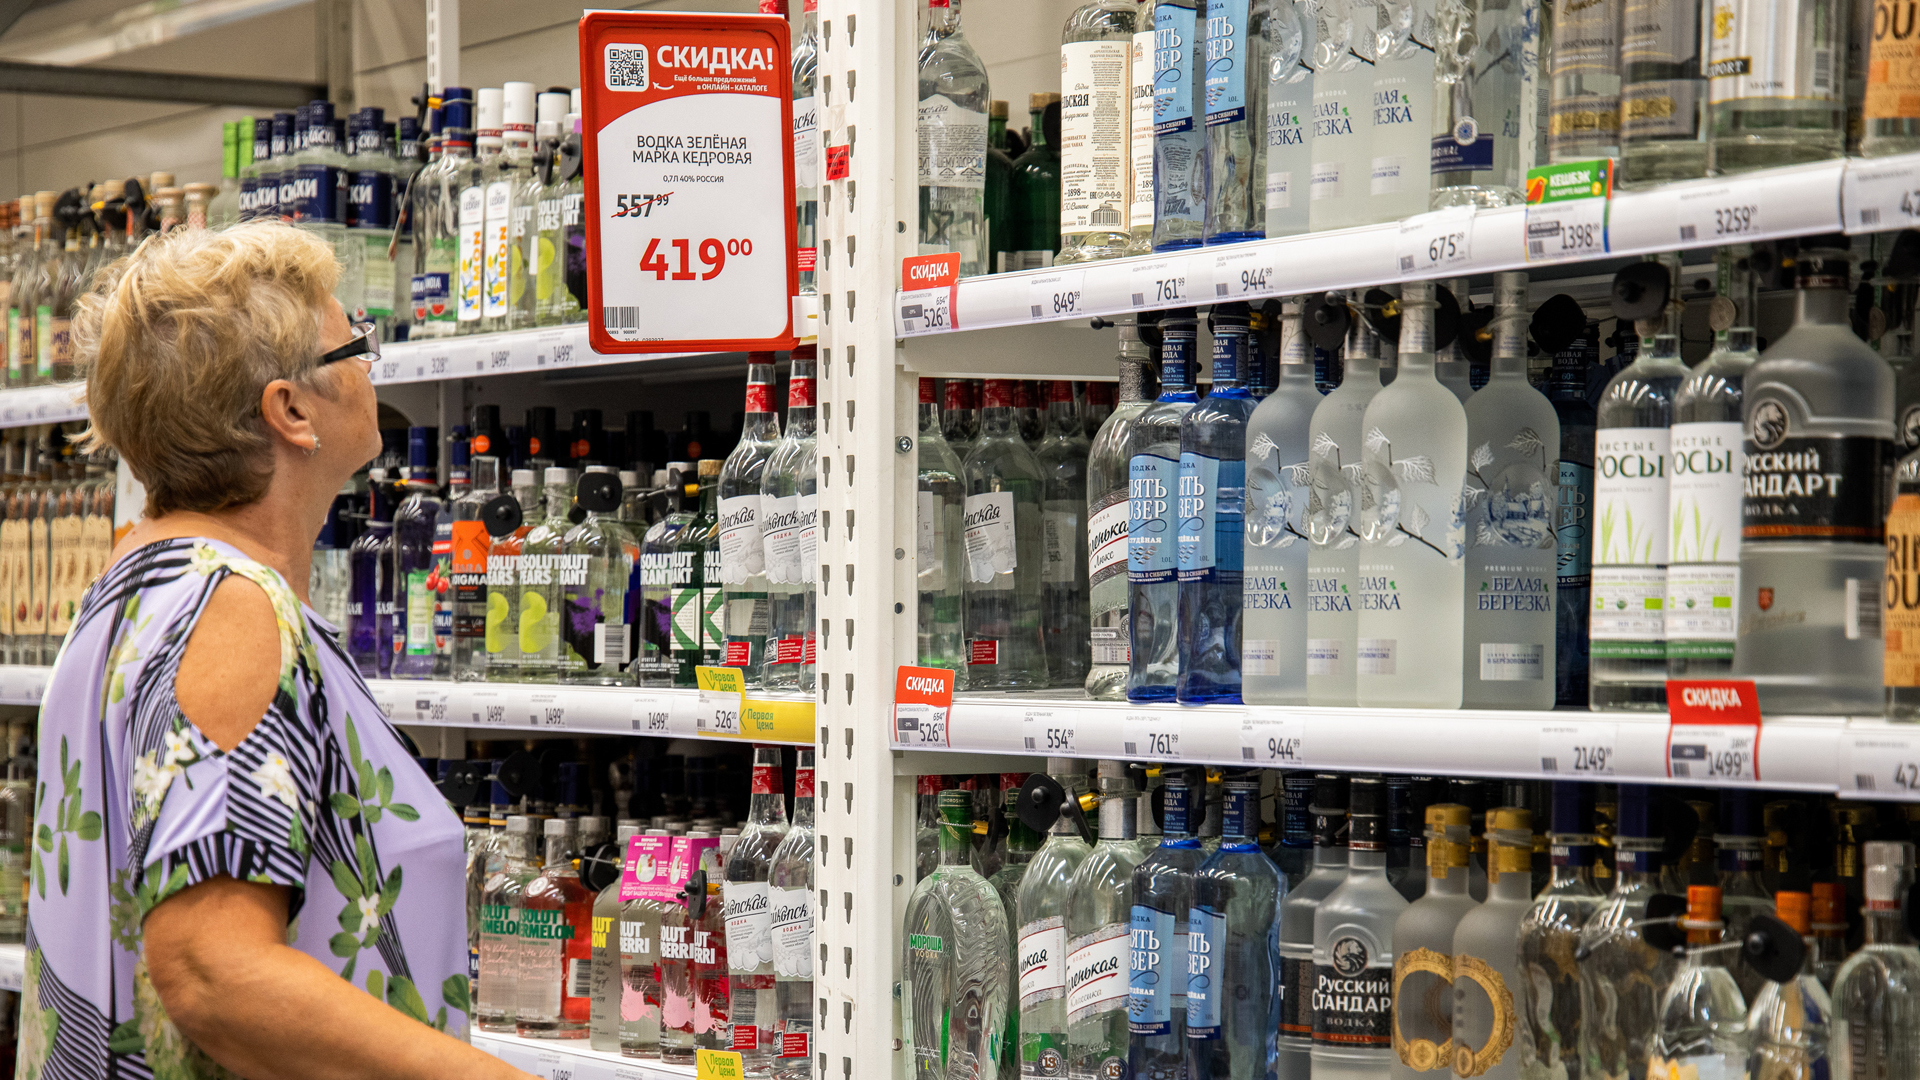 Eine Kundin steht vor dem Wodka-Regal eines Geschäfts in Rostow am Don, das mit Rabatten wirbt (Bild der staatlichen russischen Agentur Tass). | picture alliance/dpa/TASS